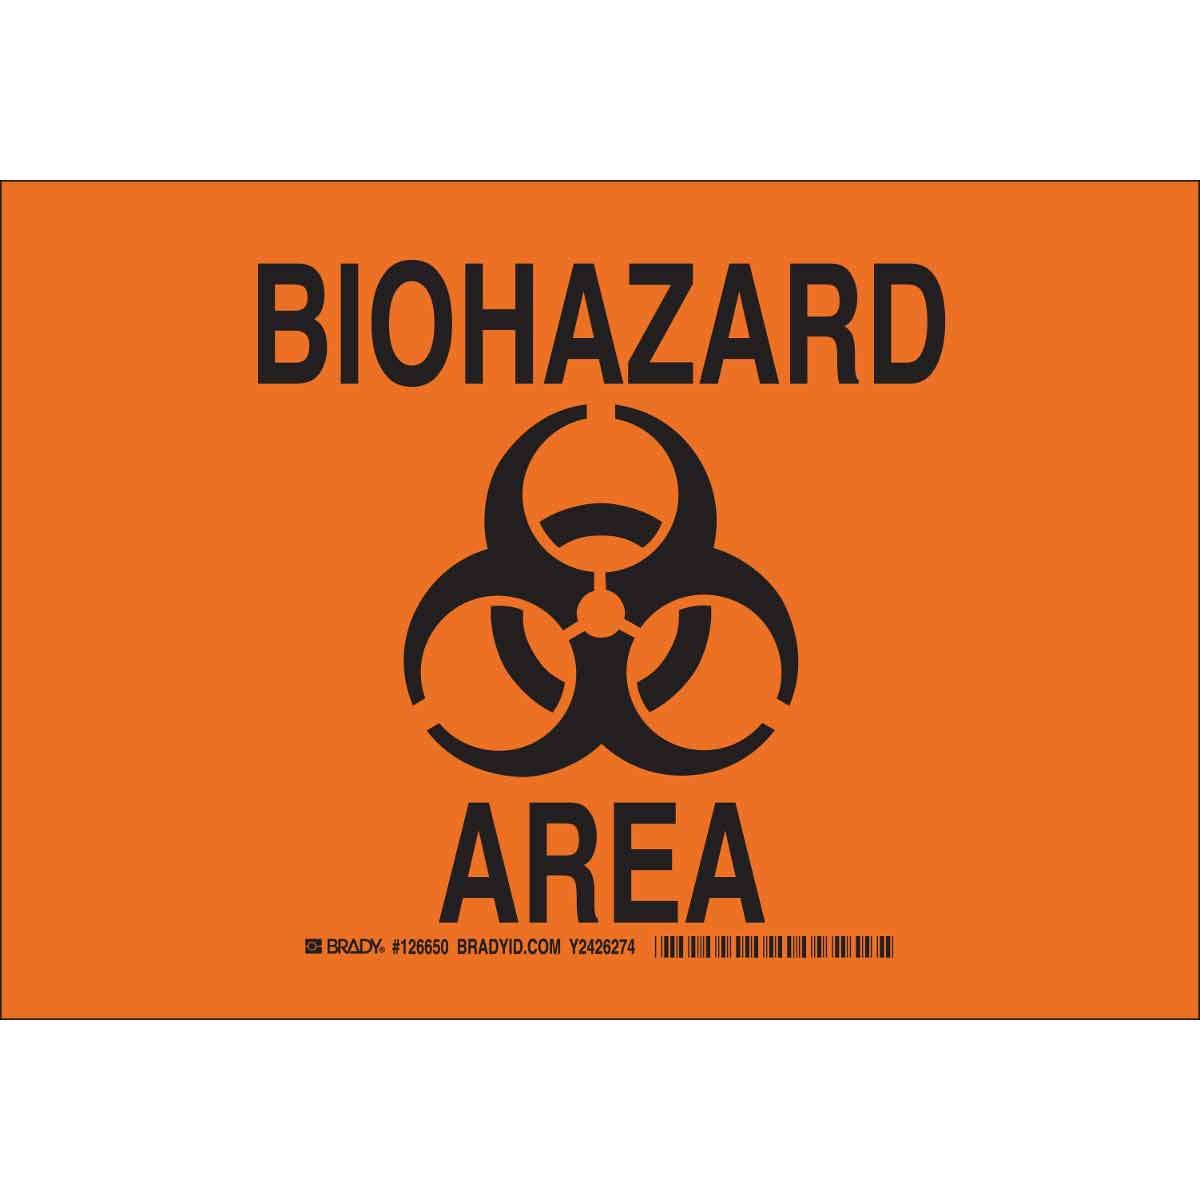 Biohazard перевод. Биохазард надпись. Усилитель Biohazard. Ограждение Biohazard баннер. Сертификация Biohazard.